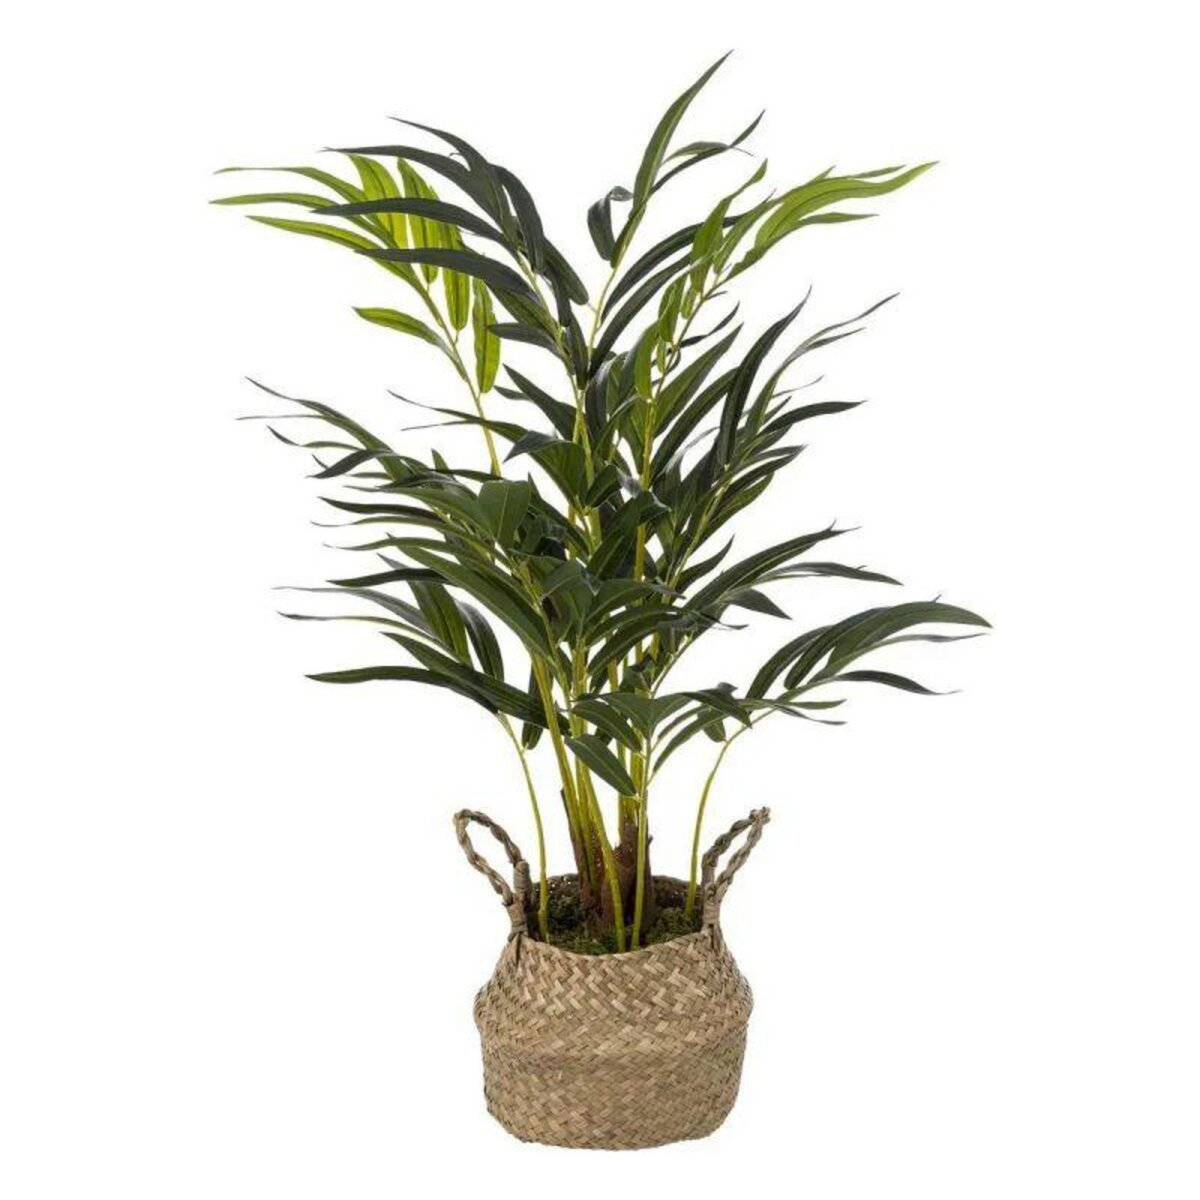  Plante Artificielle en Pot  Palmier  80cm Vert & Beige